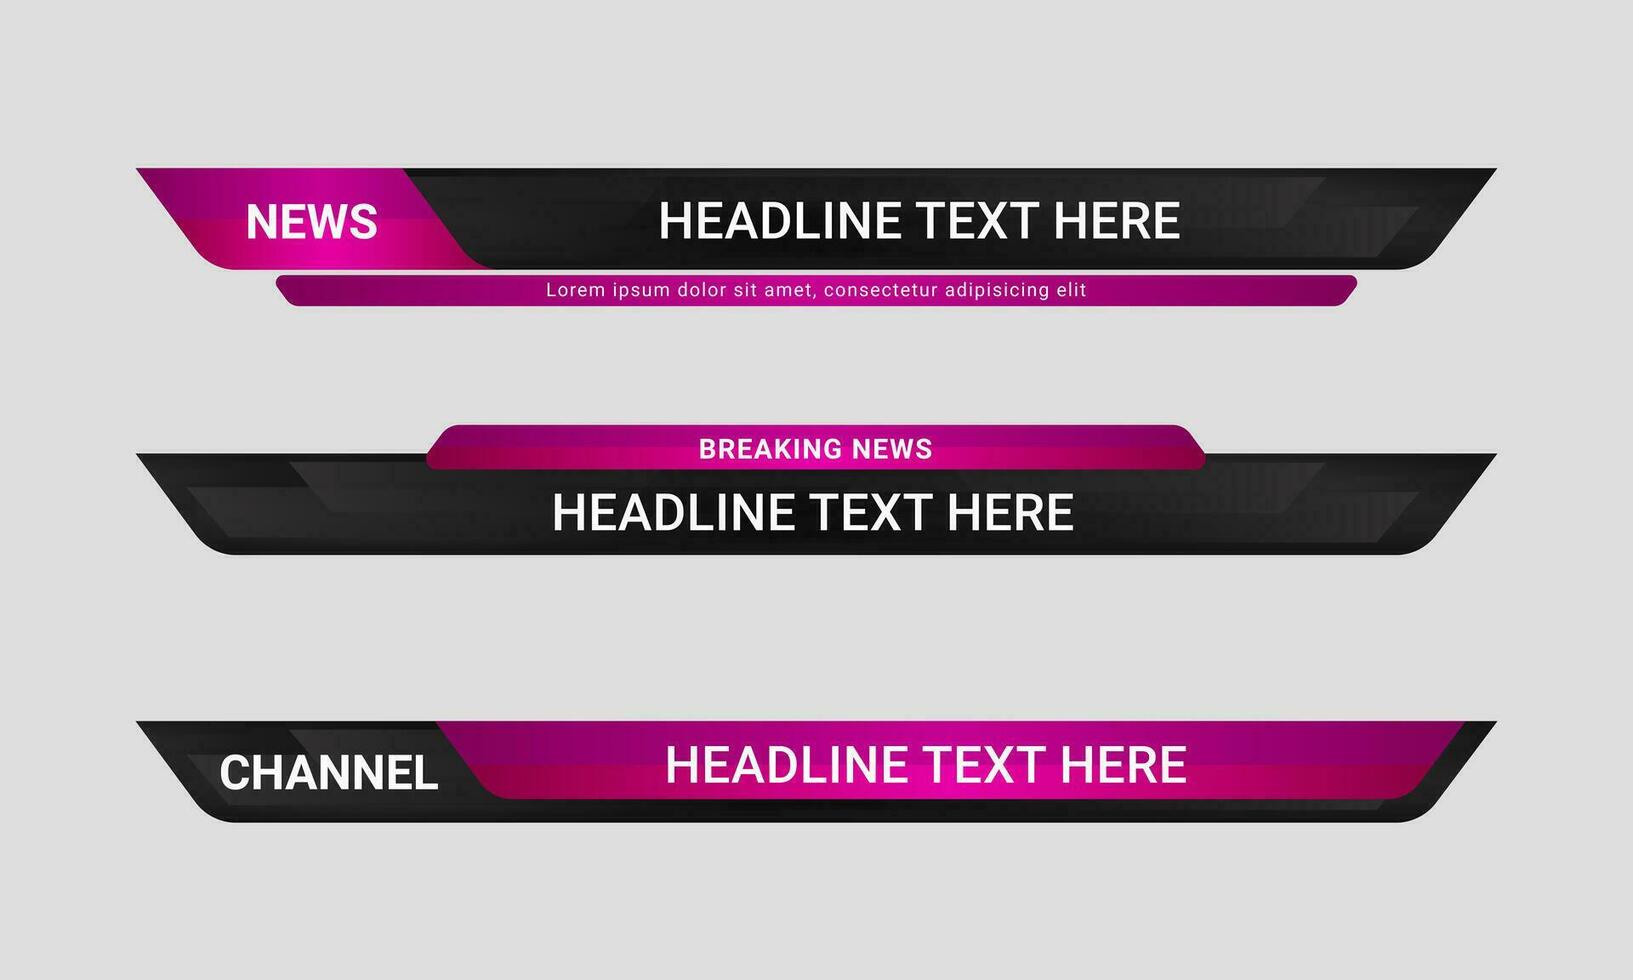 uppsättning av utsända Nyheter lägre tredje baner mallar för tv, video och media kanaler. trogen rubrik bar layout design vektor